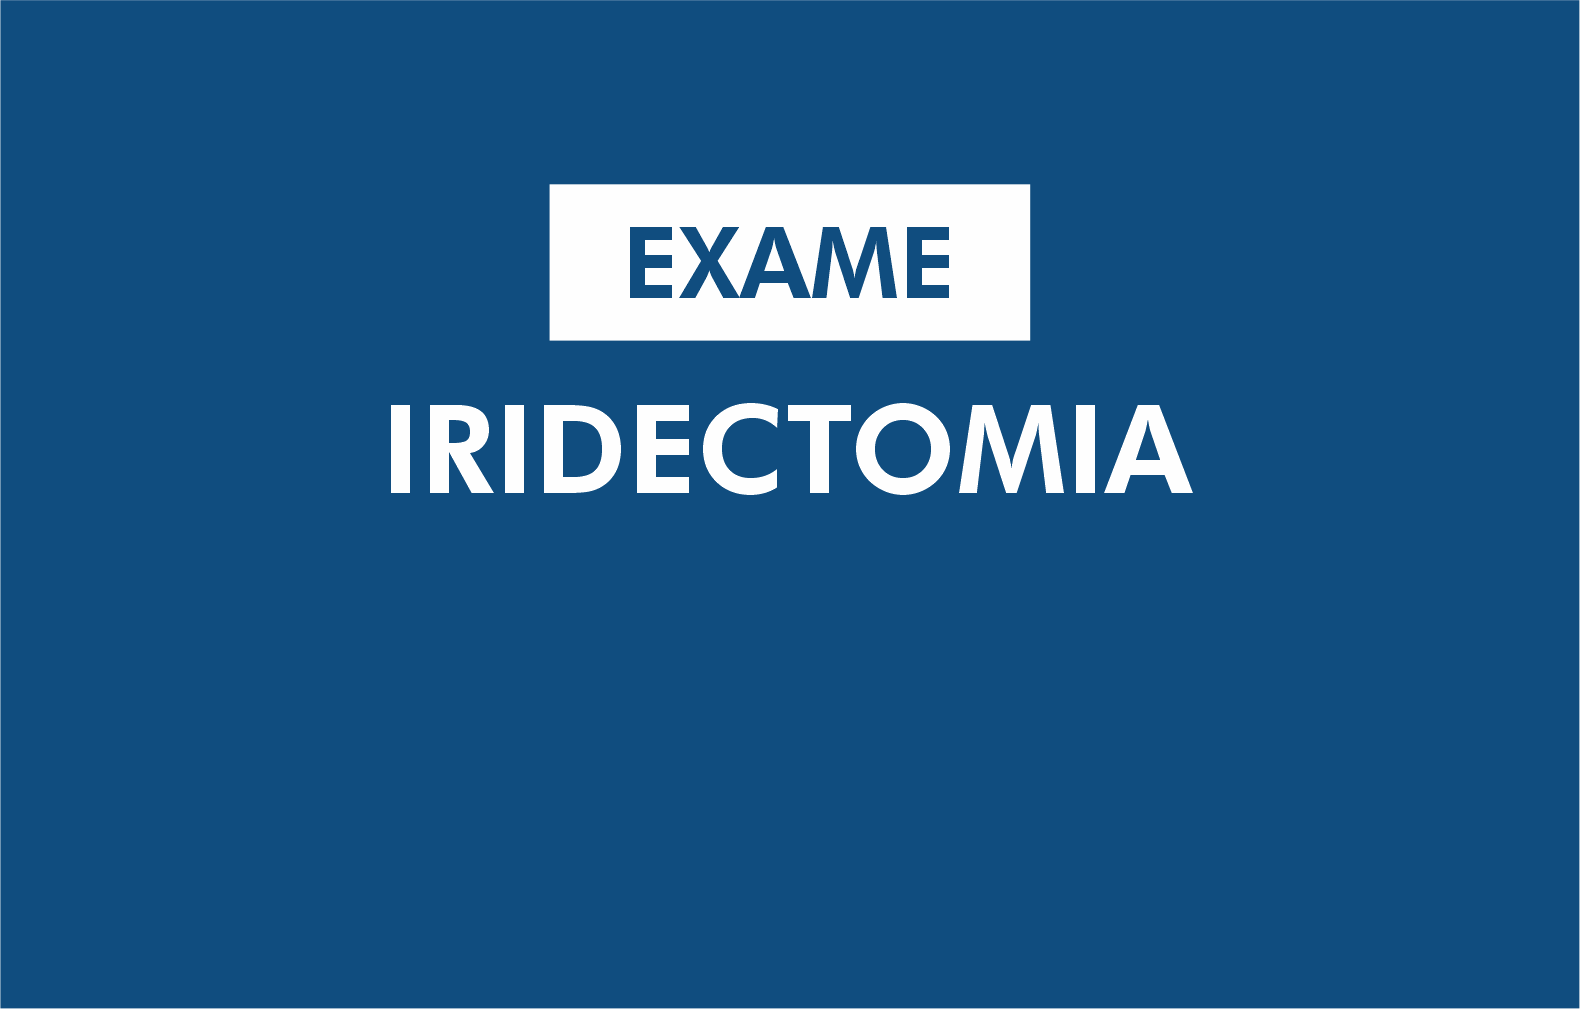 Iridectomia